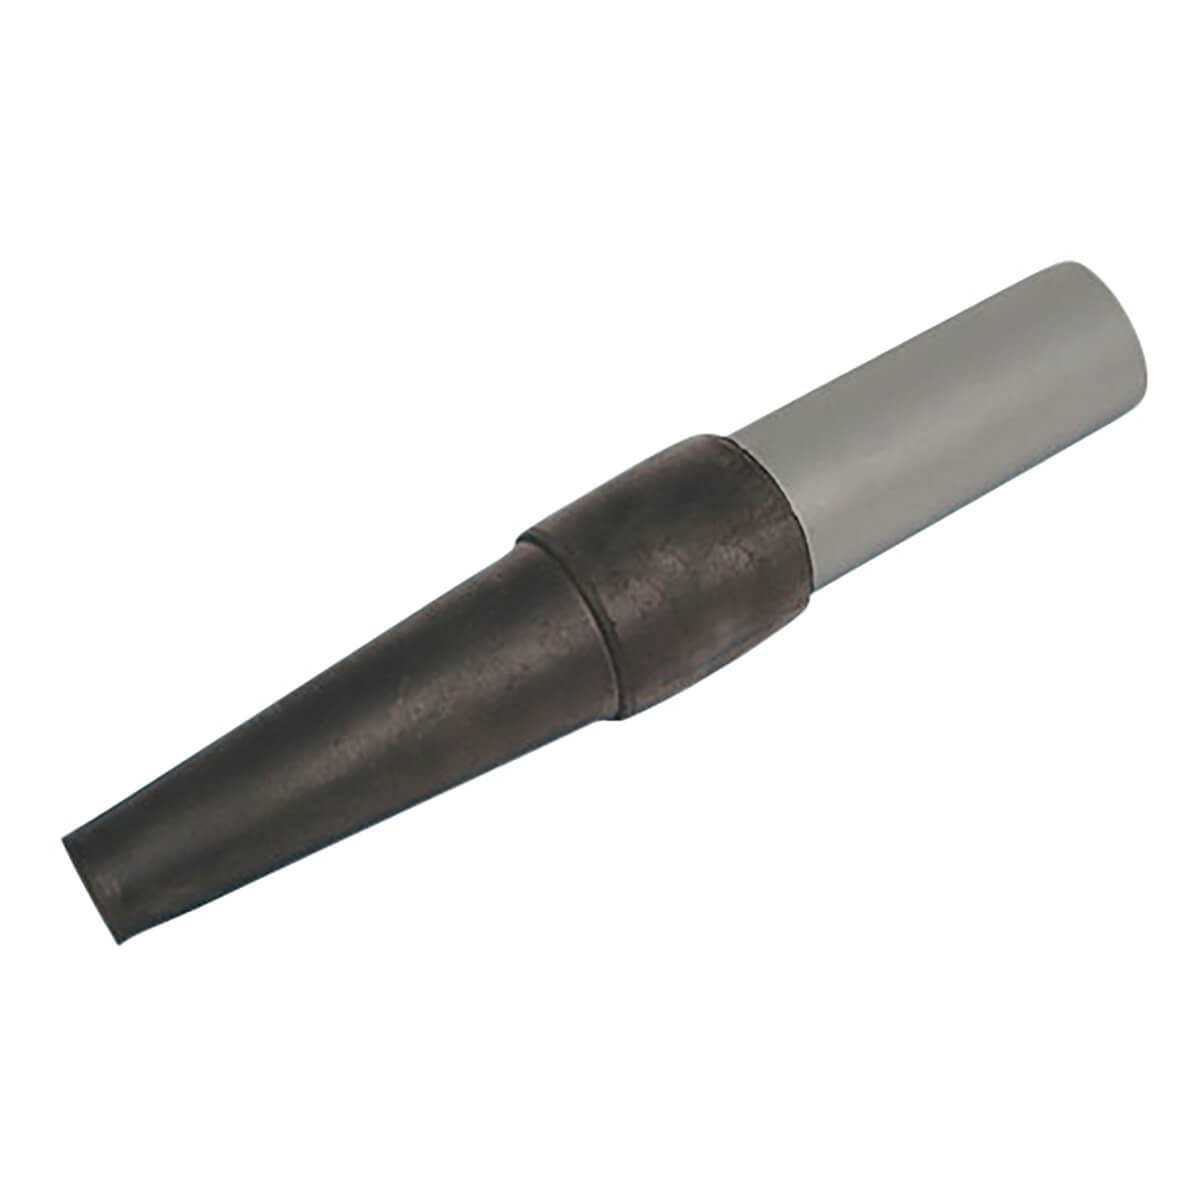 Blower Tip w/ gray tube